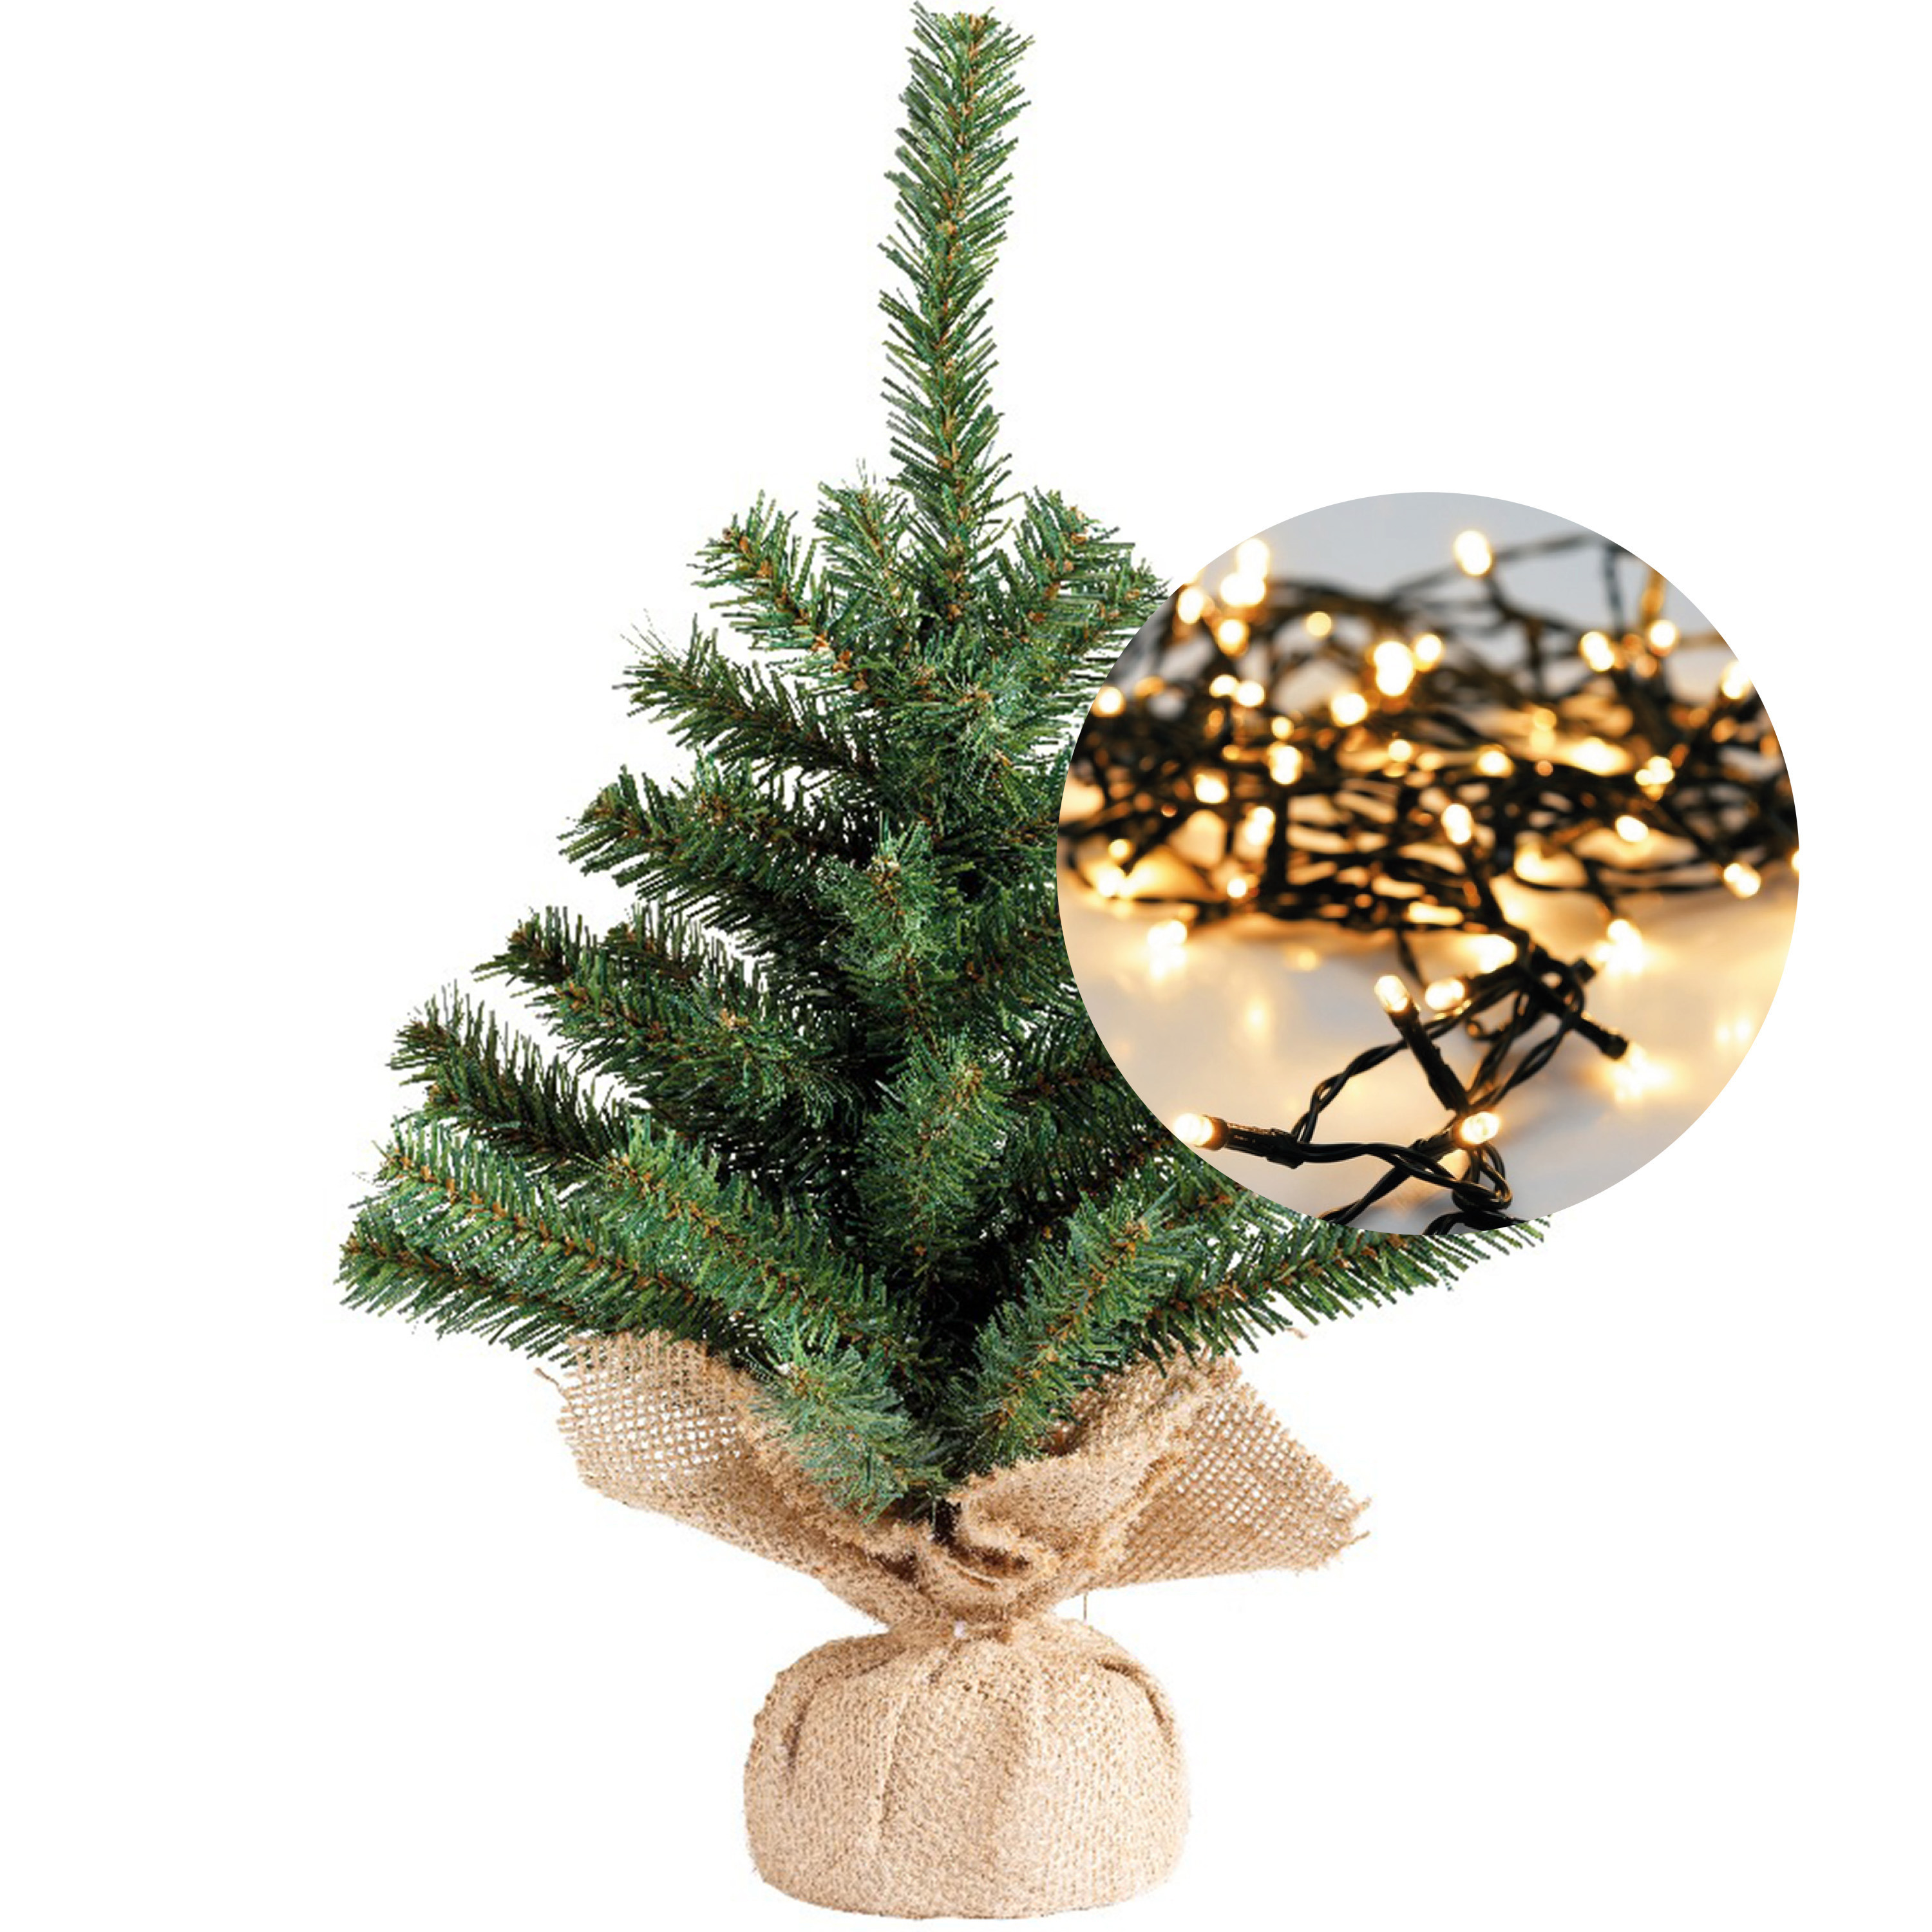 Mini kerstboom 45 cm met kerstverlichting warm wit 300 cm 40 leds